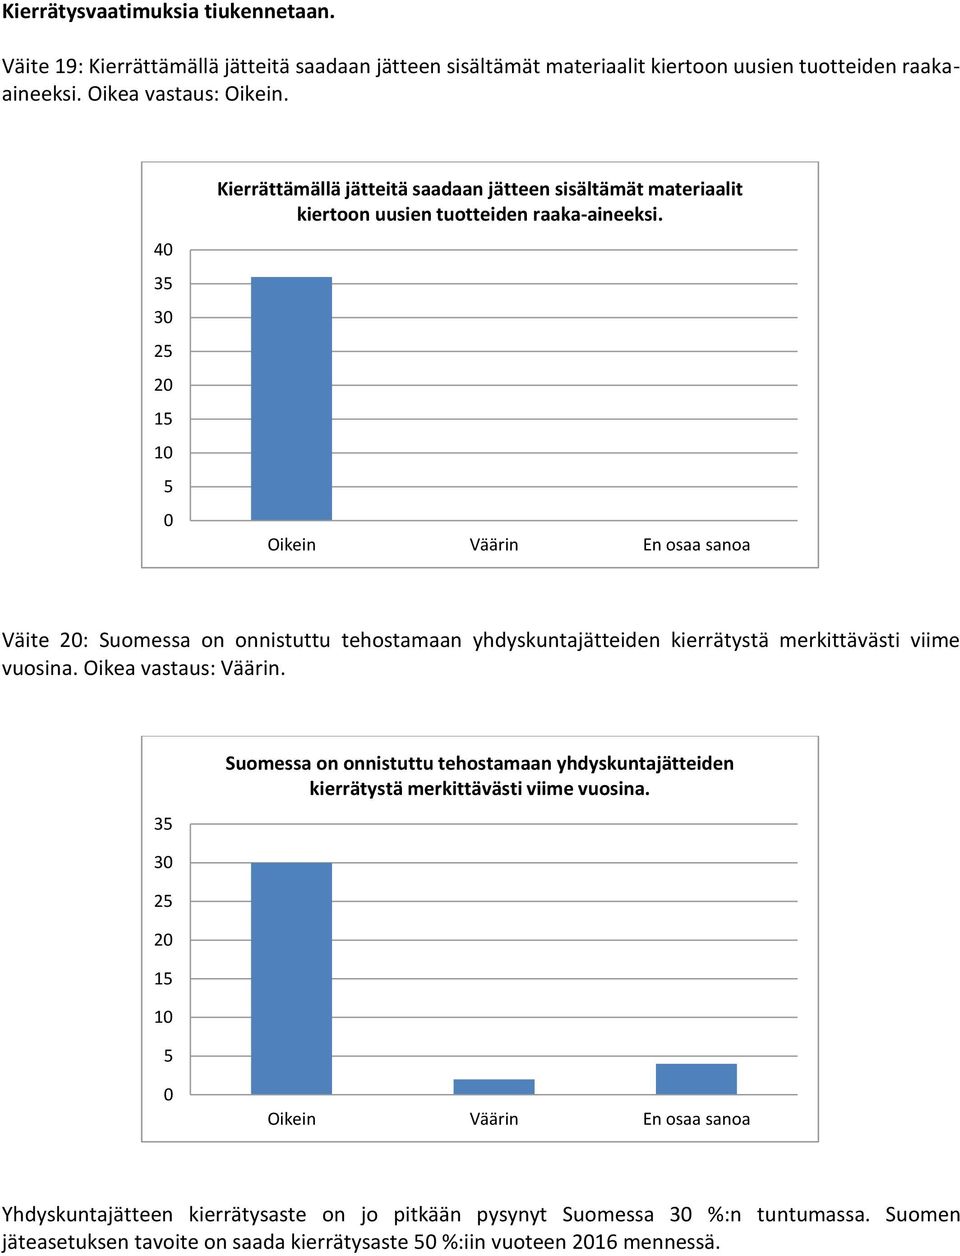 Väite : Suomessa on onnistuttu tehostamaan yhdyskuntajätteiden kierrätystä merkittävästi viime vuosina. Oikea vastaus: Väärin.